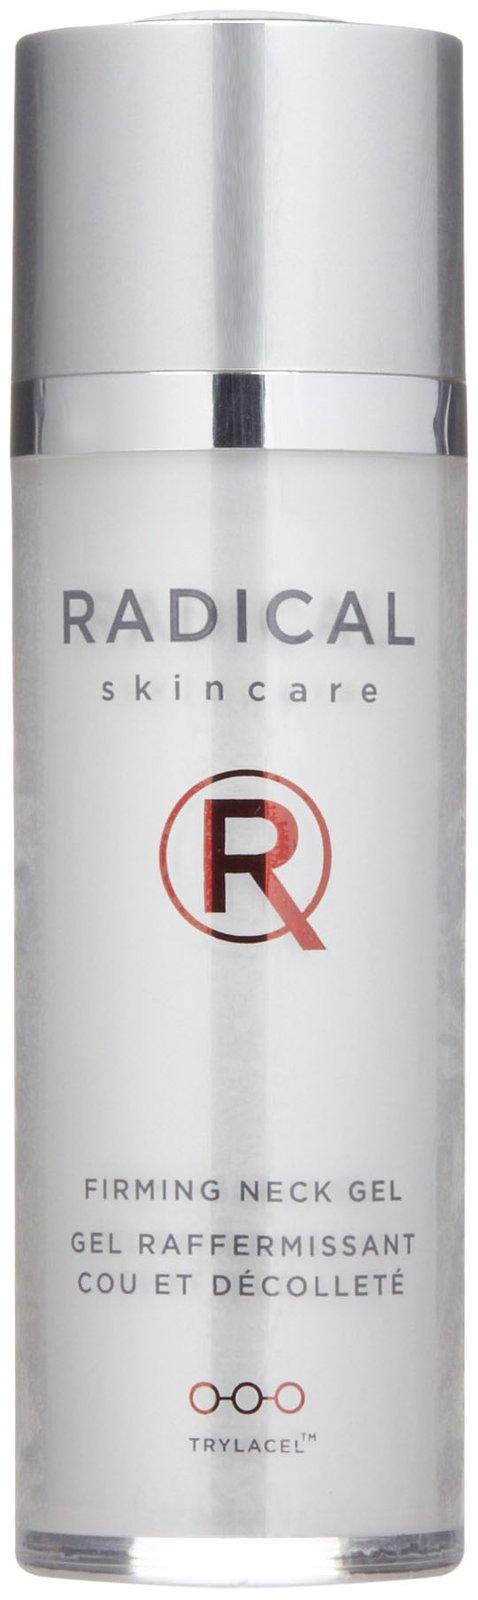 Radical Skincare Firming Neck Gel